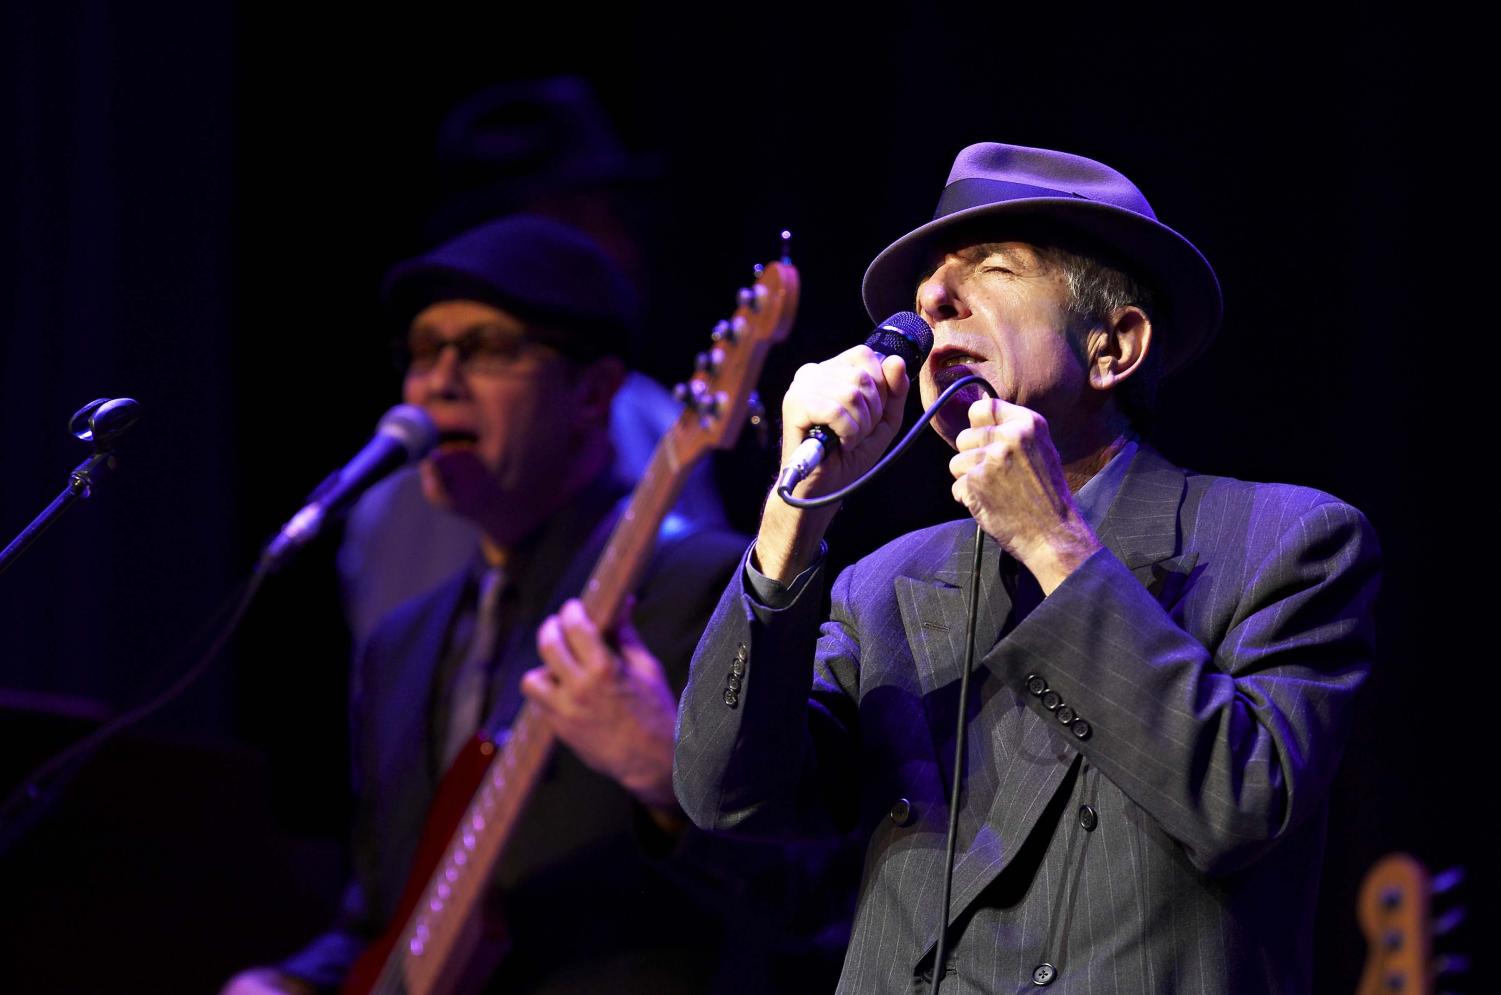 Aleliuja: filmas, pasakojantis nuostabią istoriją apie Leonardą Coheną ir jo stebuklingą dainą